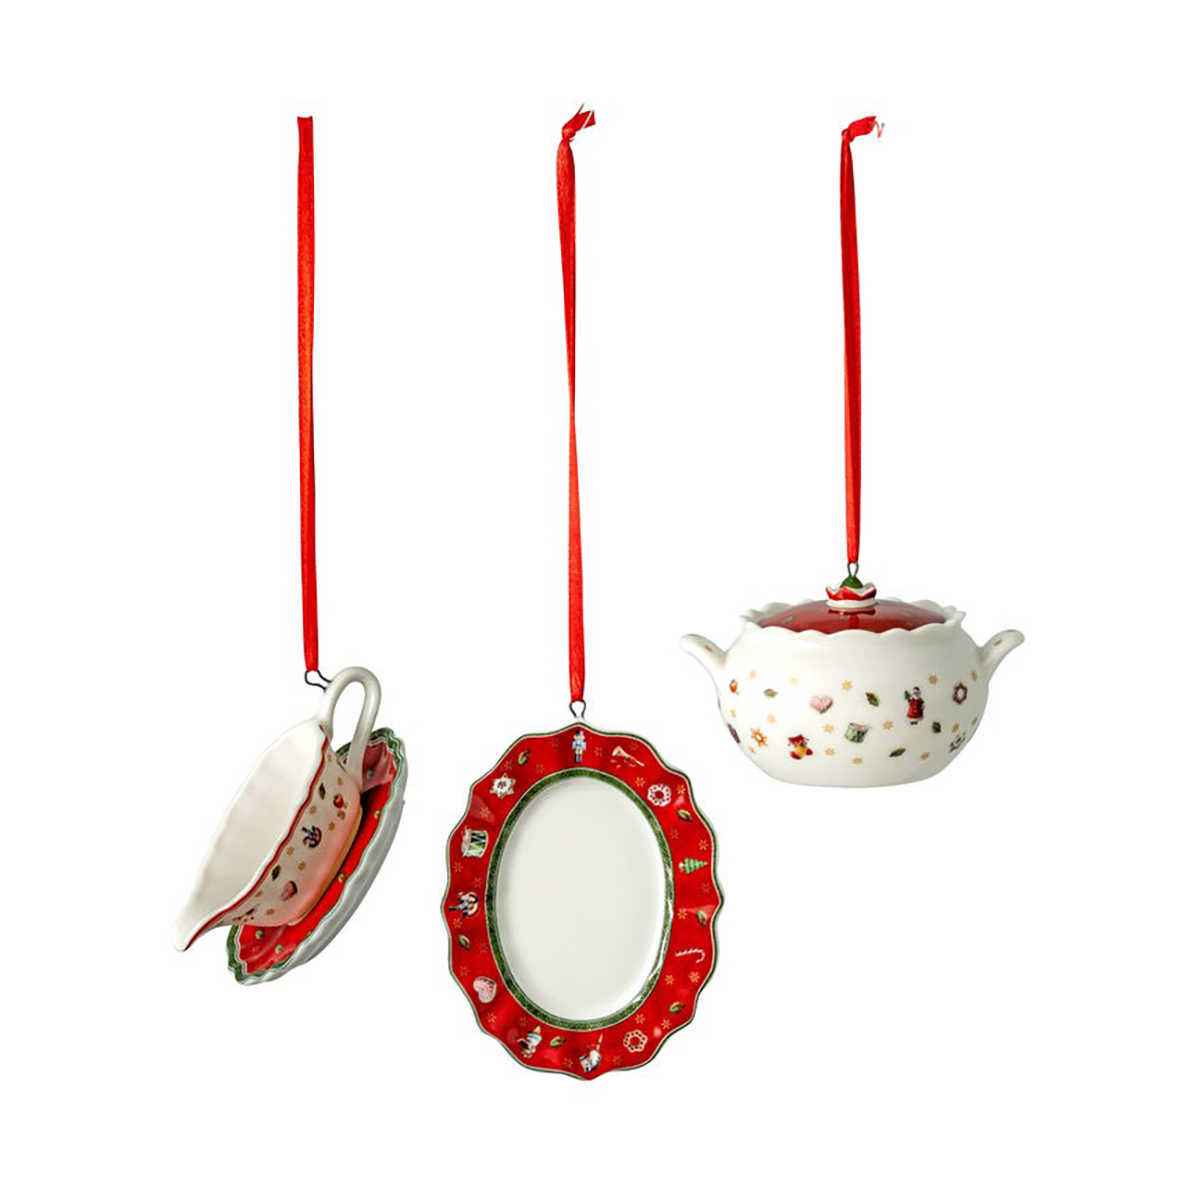 villeroy & boch suspension de sapin de noël service toy's delight, lot de 3 blanc-rouge